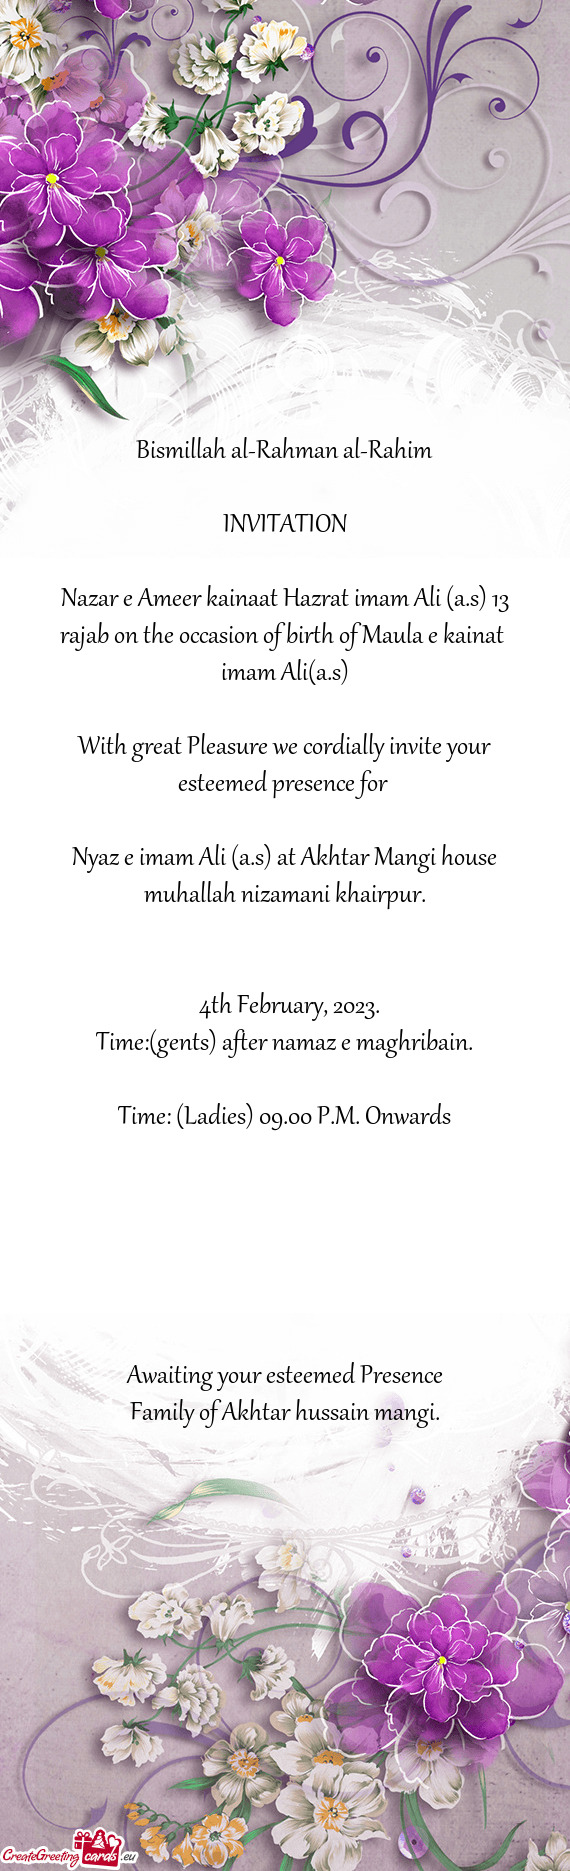 Nyaz e imam Ali (a.s) at Akhtar Mangi house muhallah nizamani khairpur